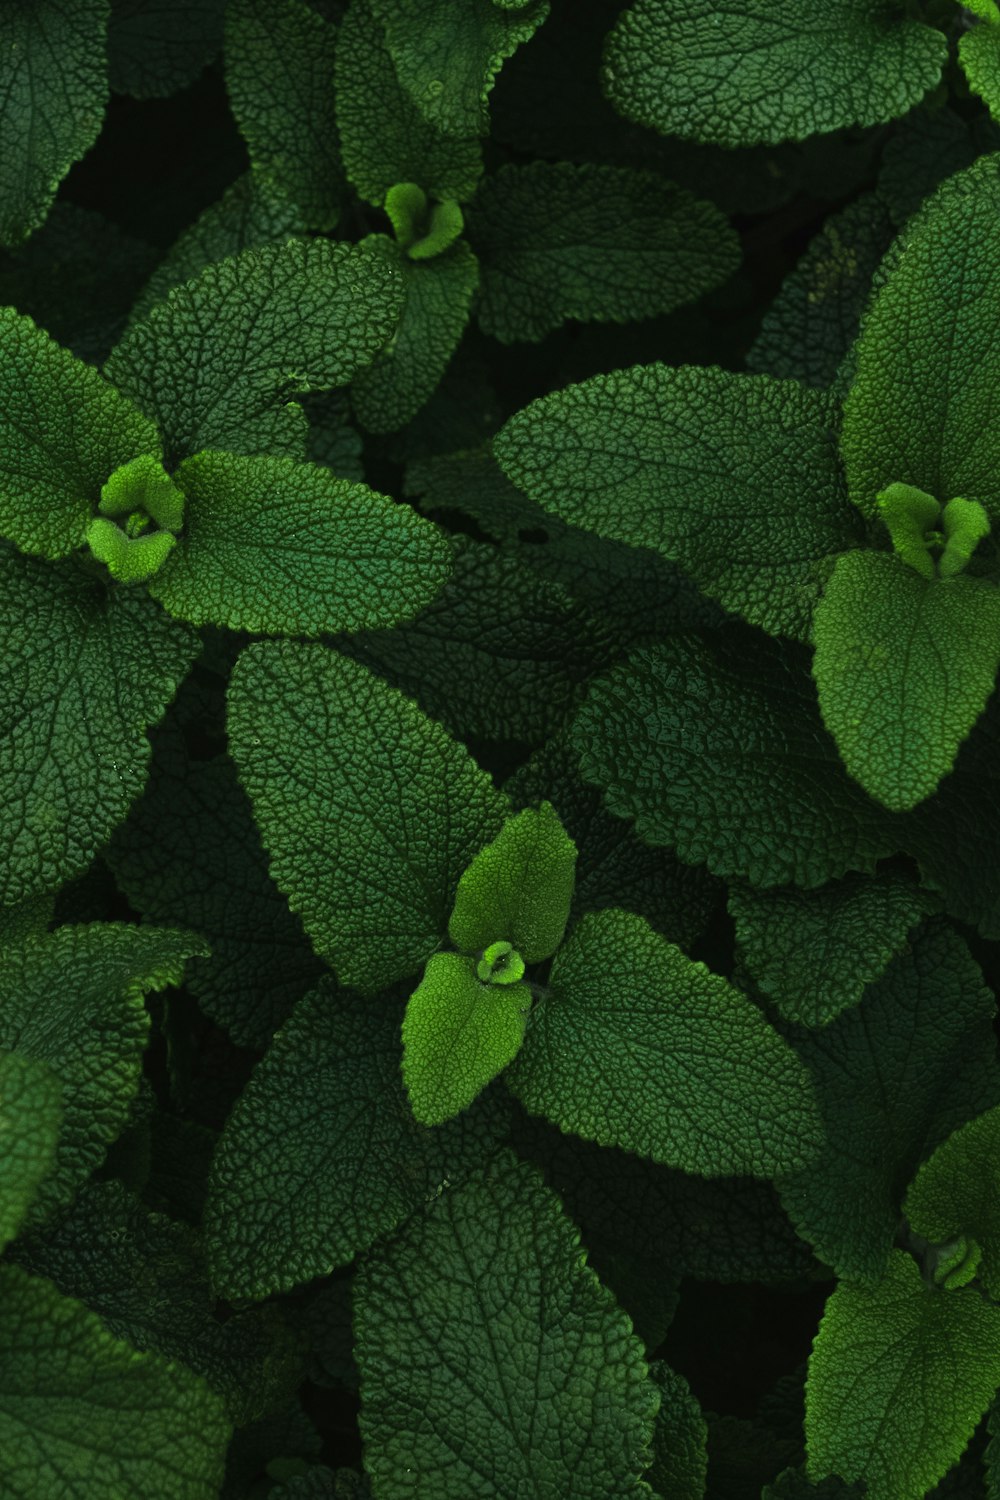 planta verde com gotículas de água